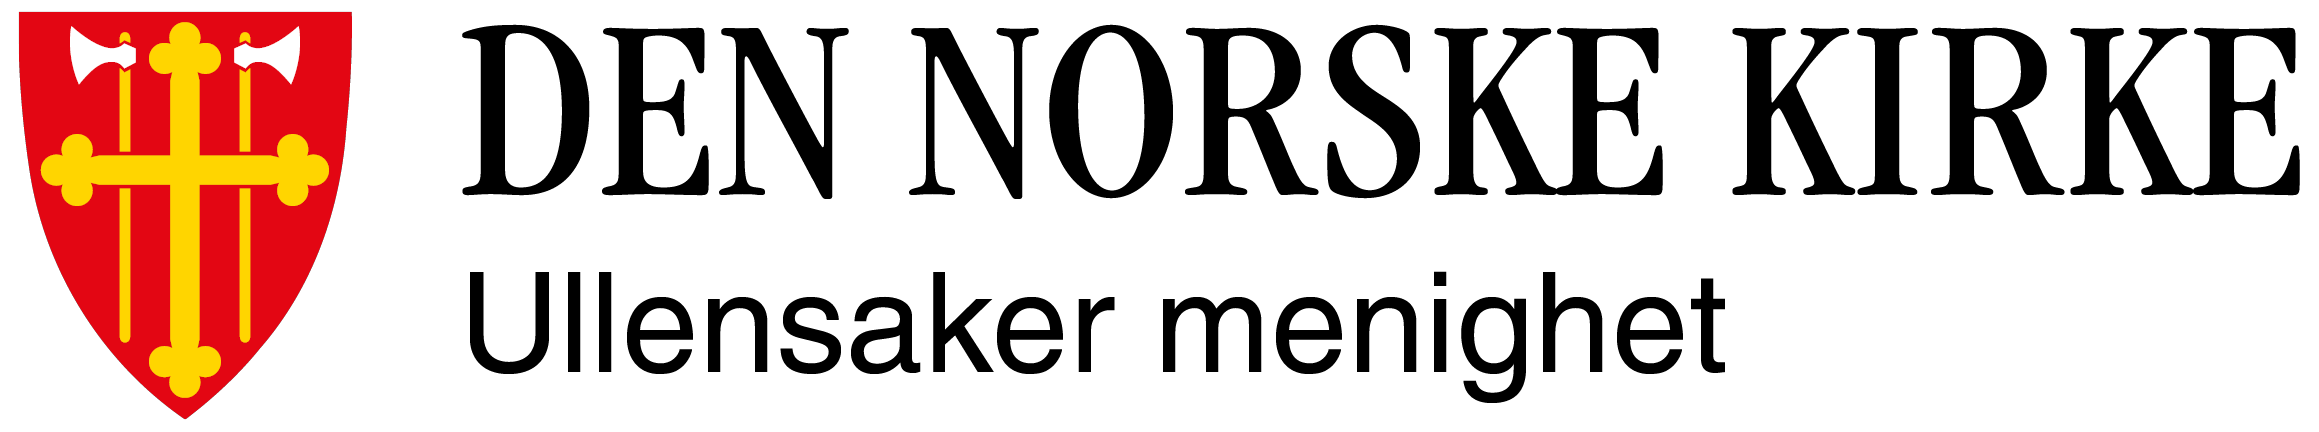  Ullensaker (Kløfta) logo